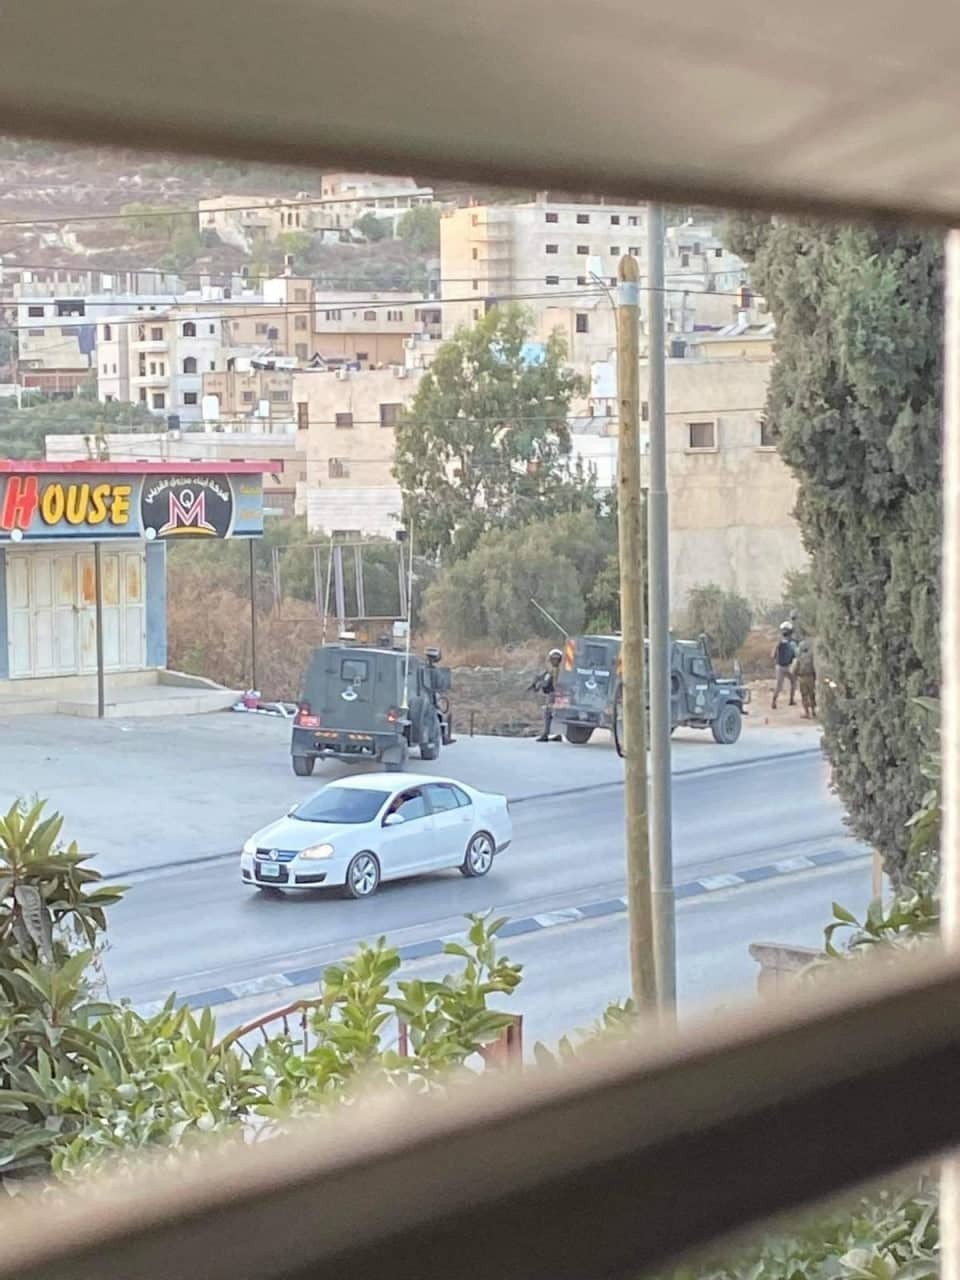 إصابة جندي إسرائيلي بعملية دهس قرب حوارة جنوب نابلس